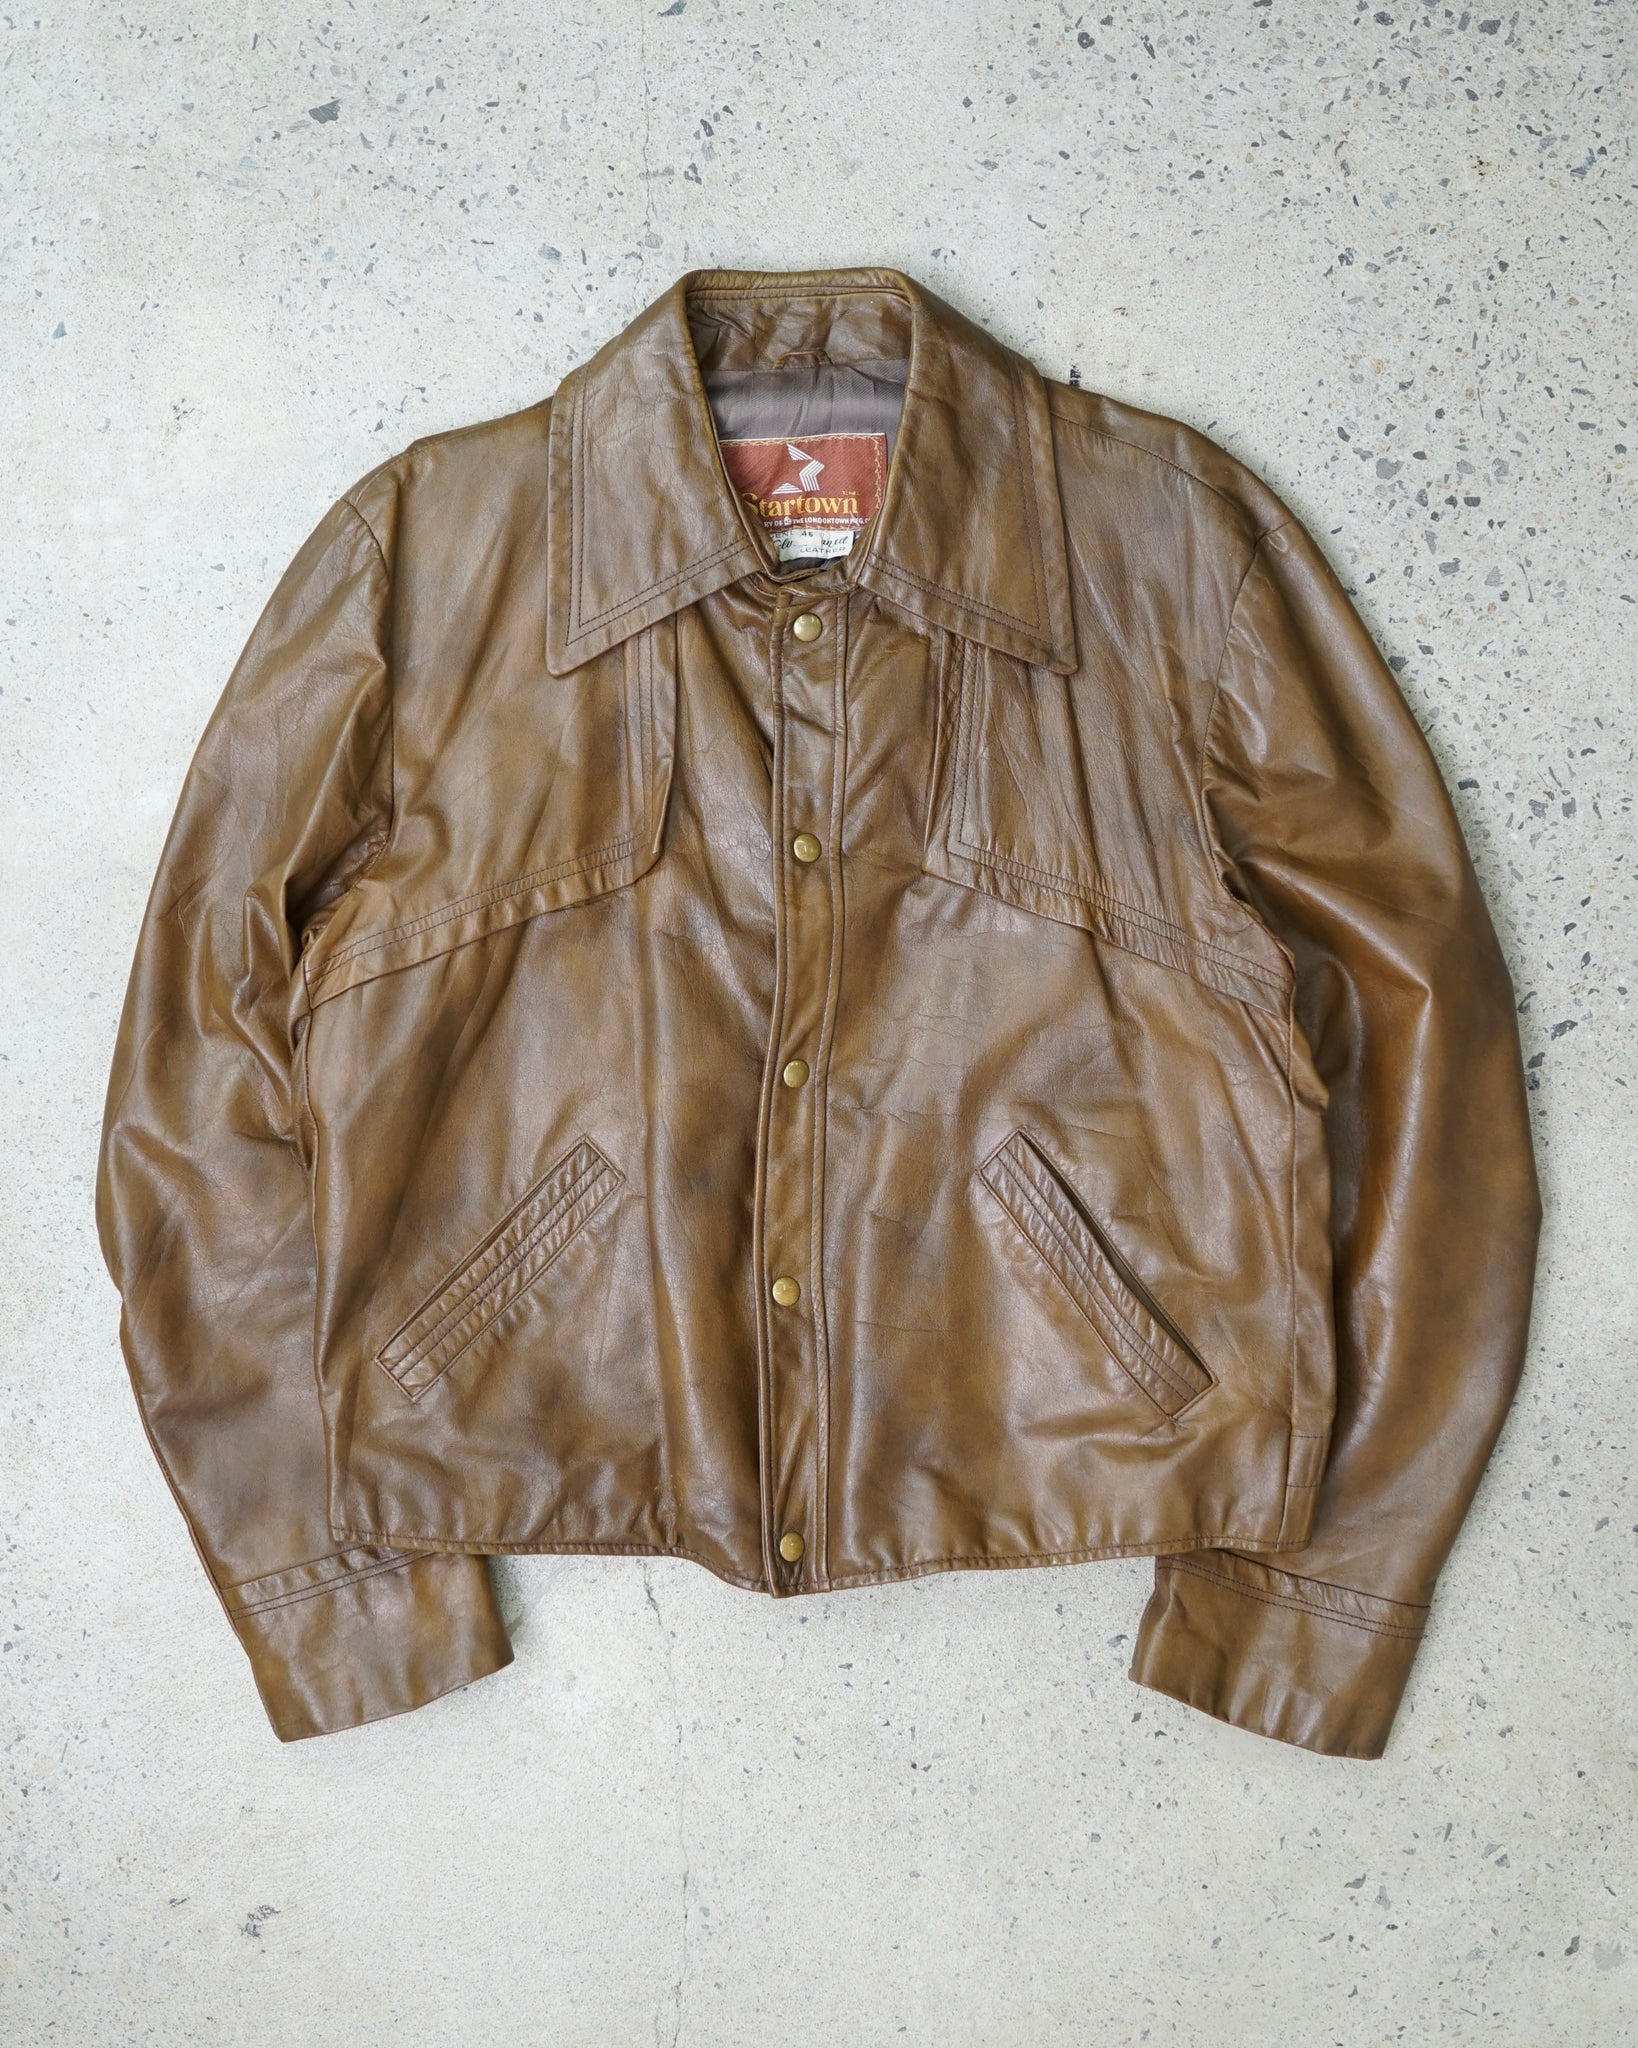 startown leather jacket - medium